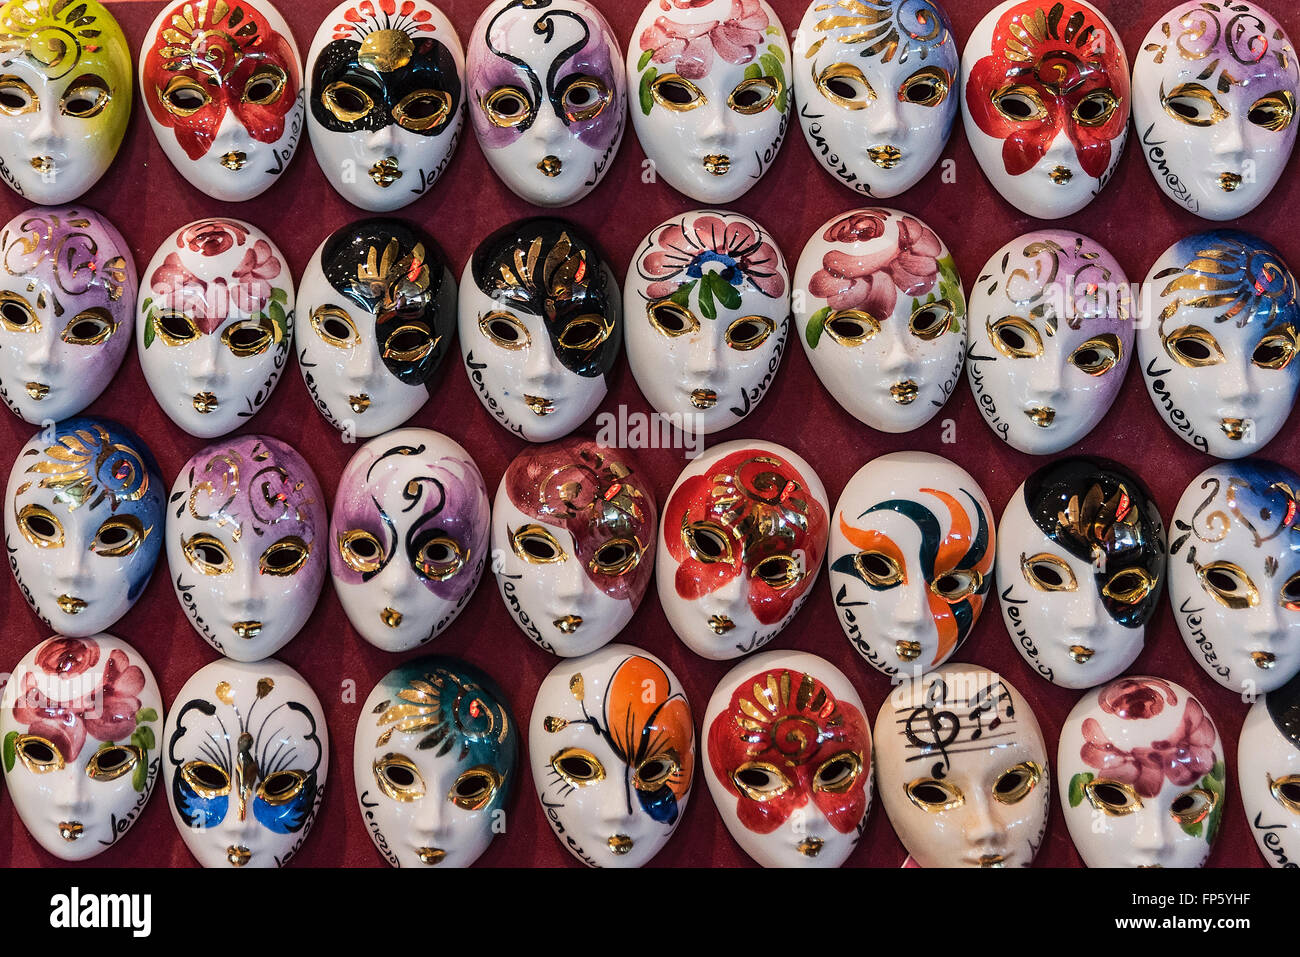 Masque de porcelaine de souvenirs, Venise, Italie Banque D'Images